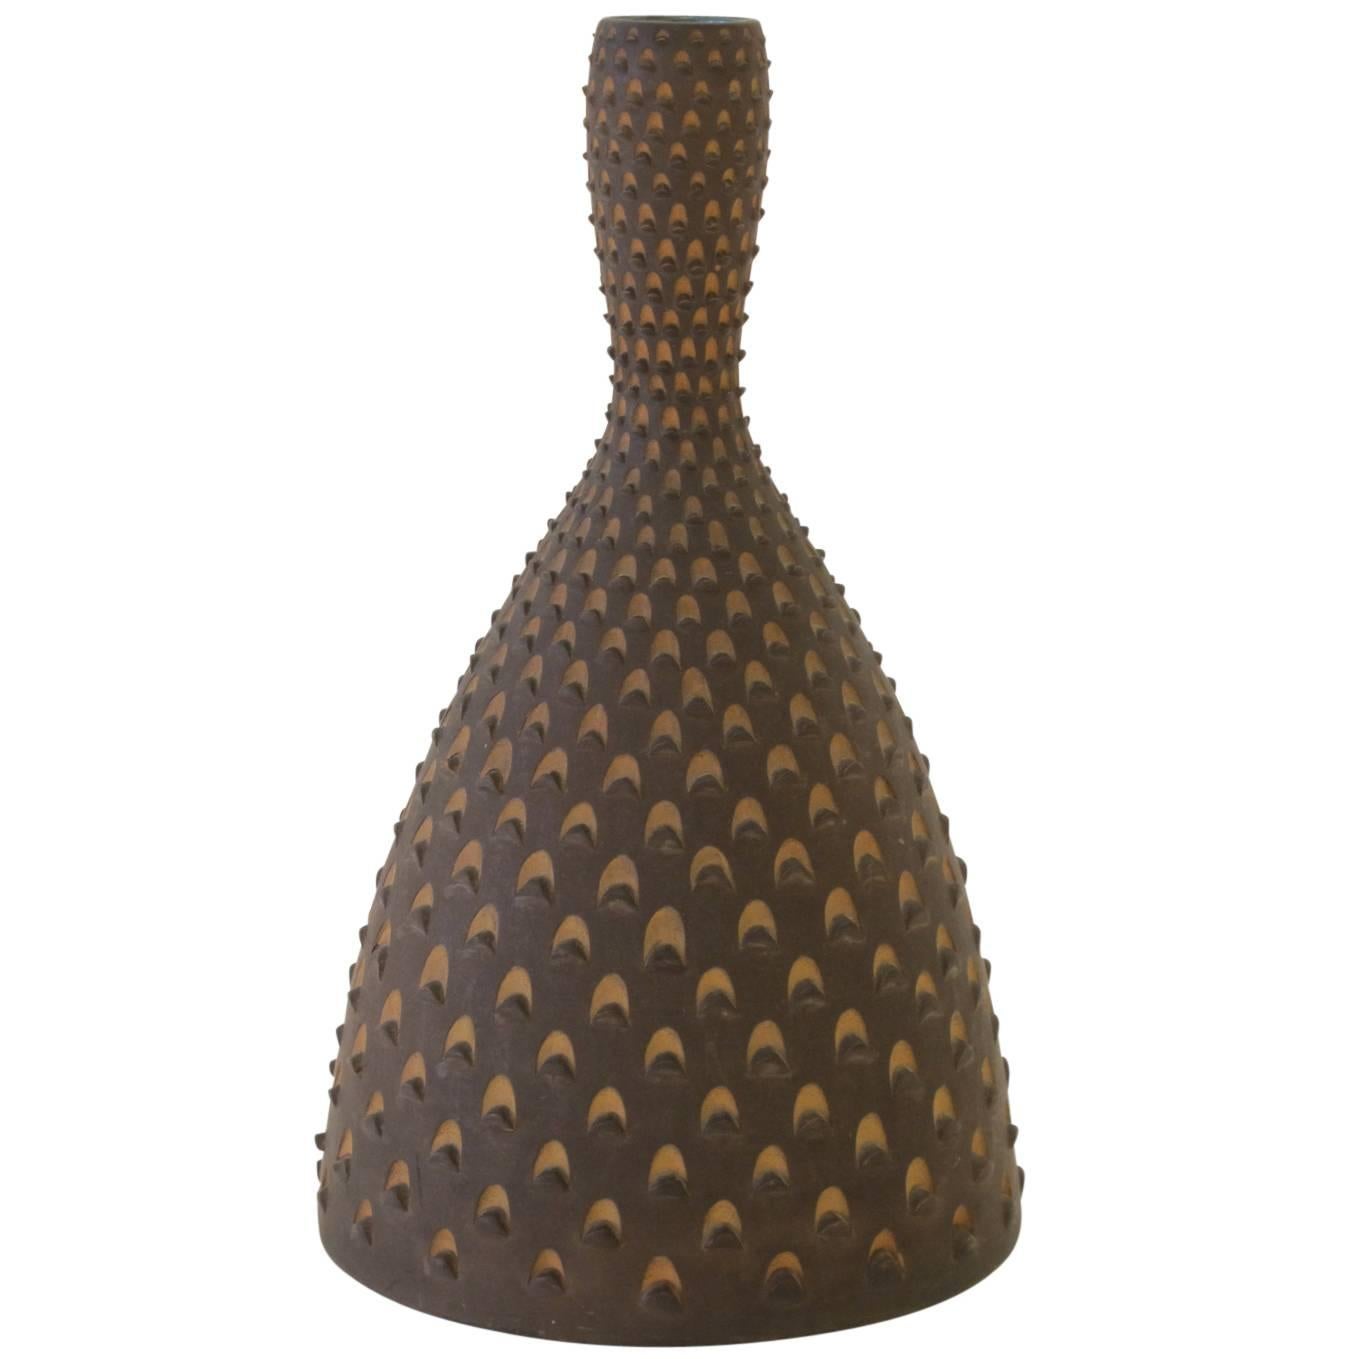 Zaccagnini Raymor Ceramic Vase Pinecone Italian 1950's